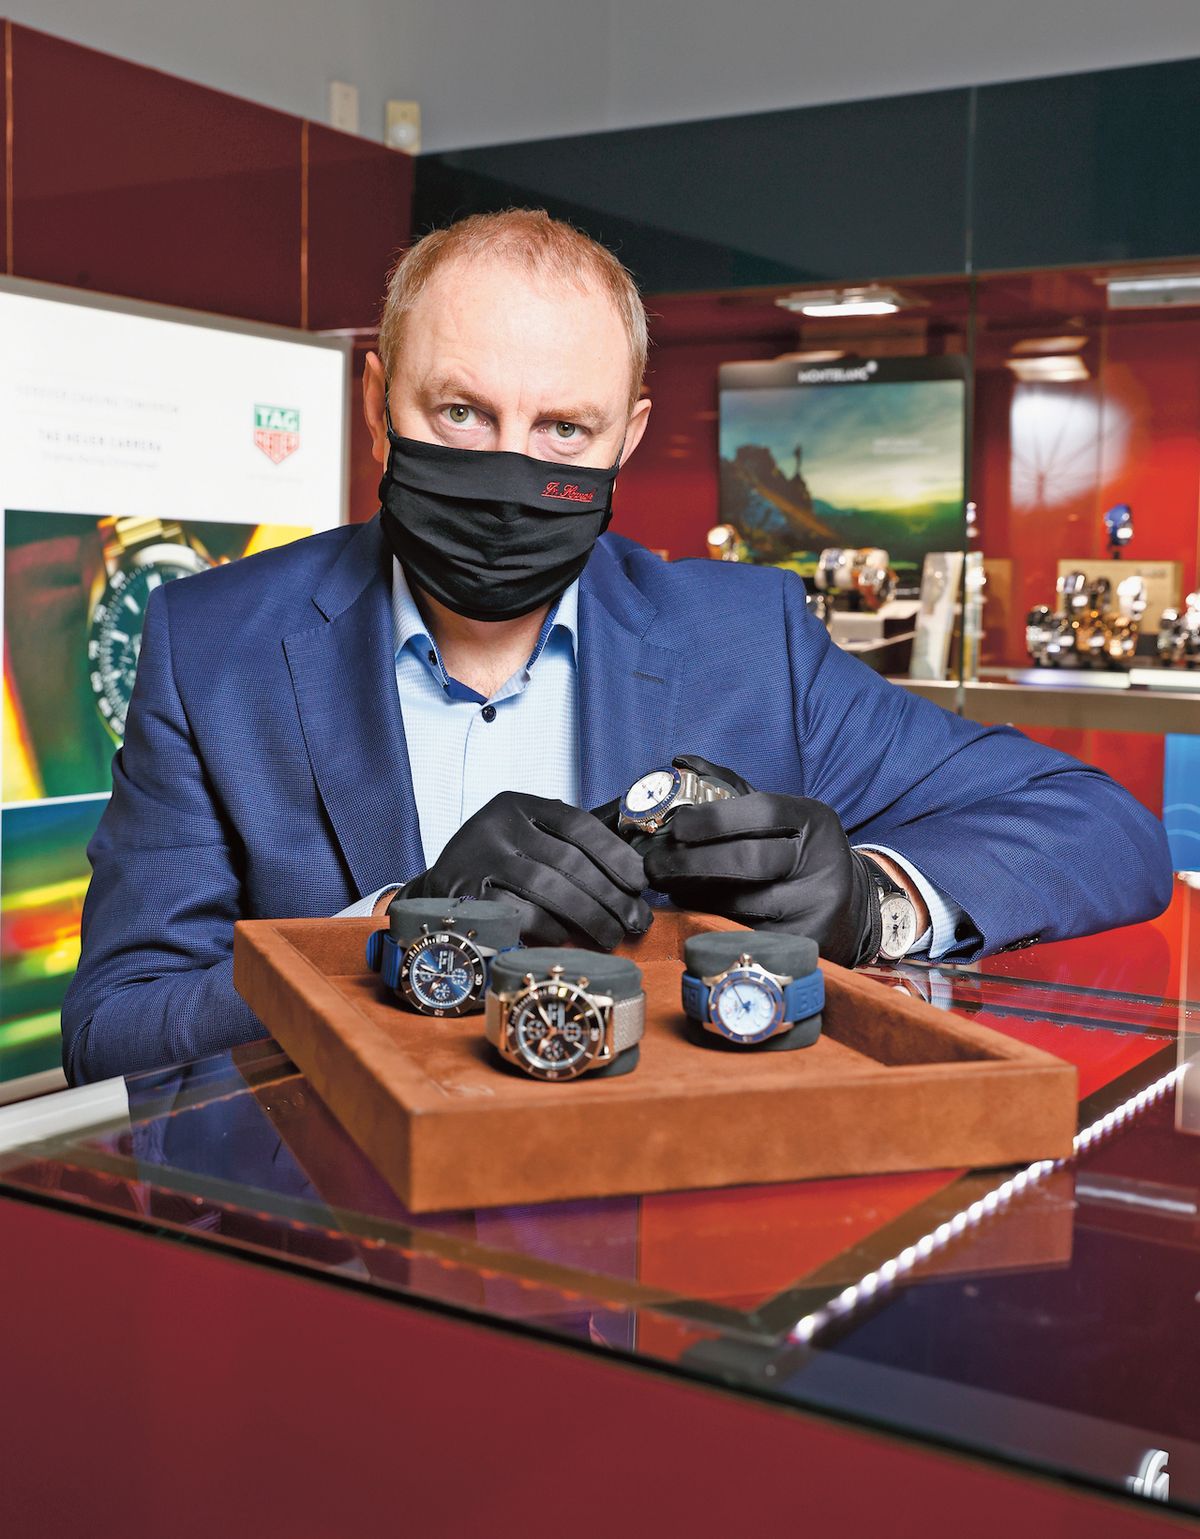 Dalibor Hanák přistupuje ke skvostům ze své nabídky s úctou a v rukavičkách. Švýcarské hodinky si to zaslouží…